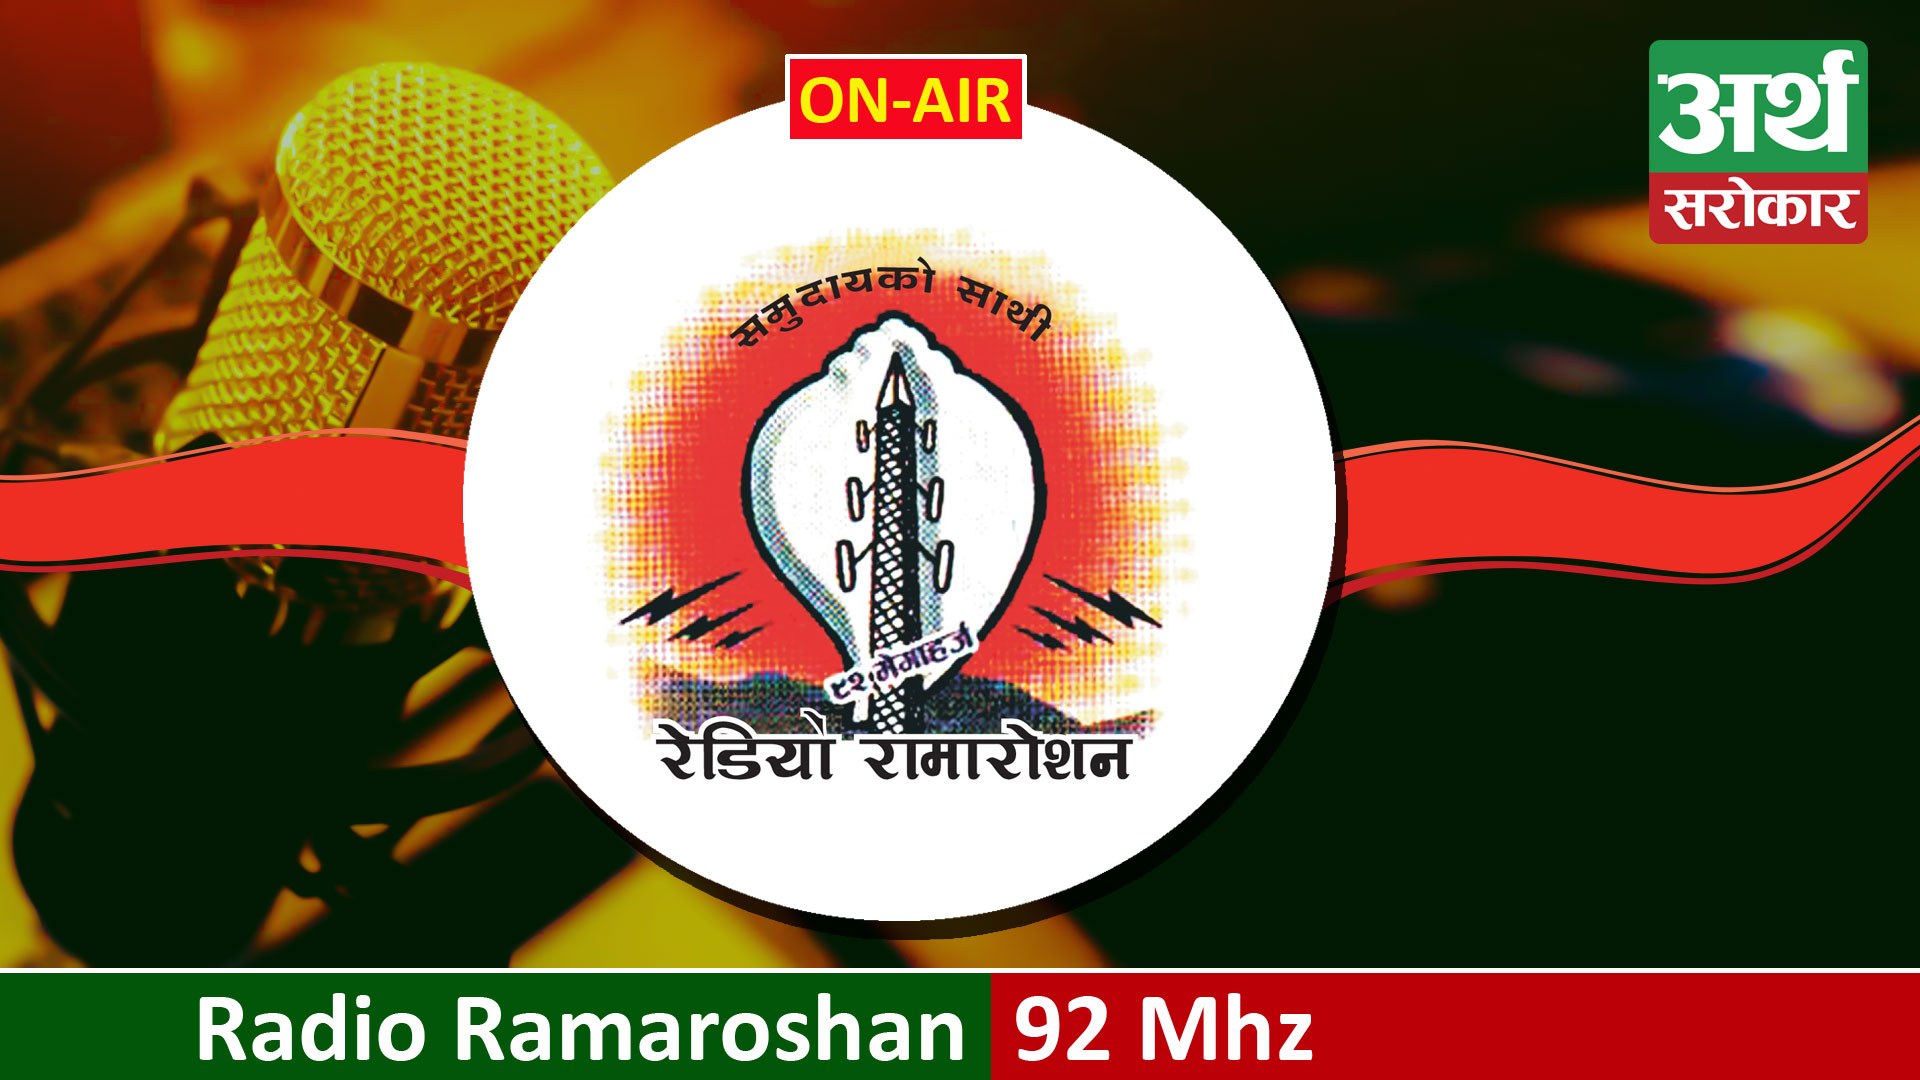 Radio Ramaroshan FM 92 MHz